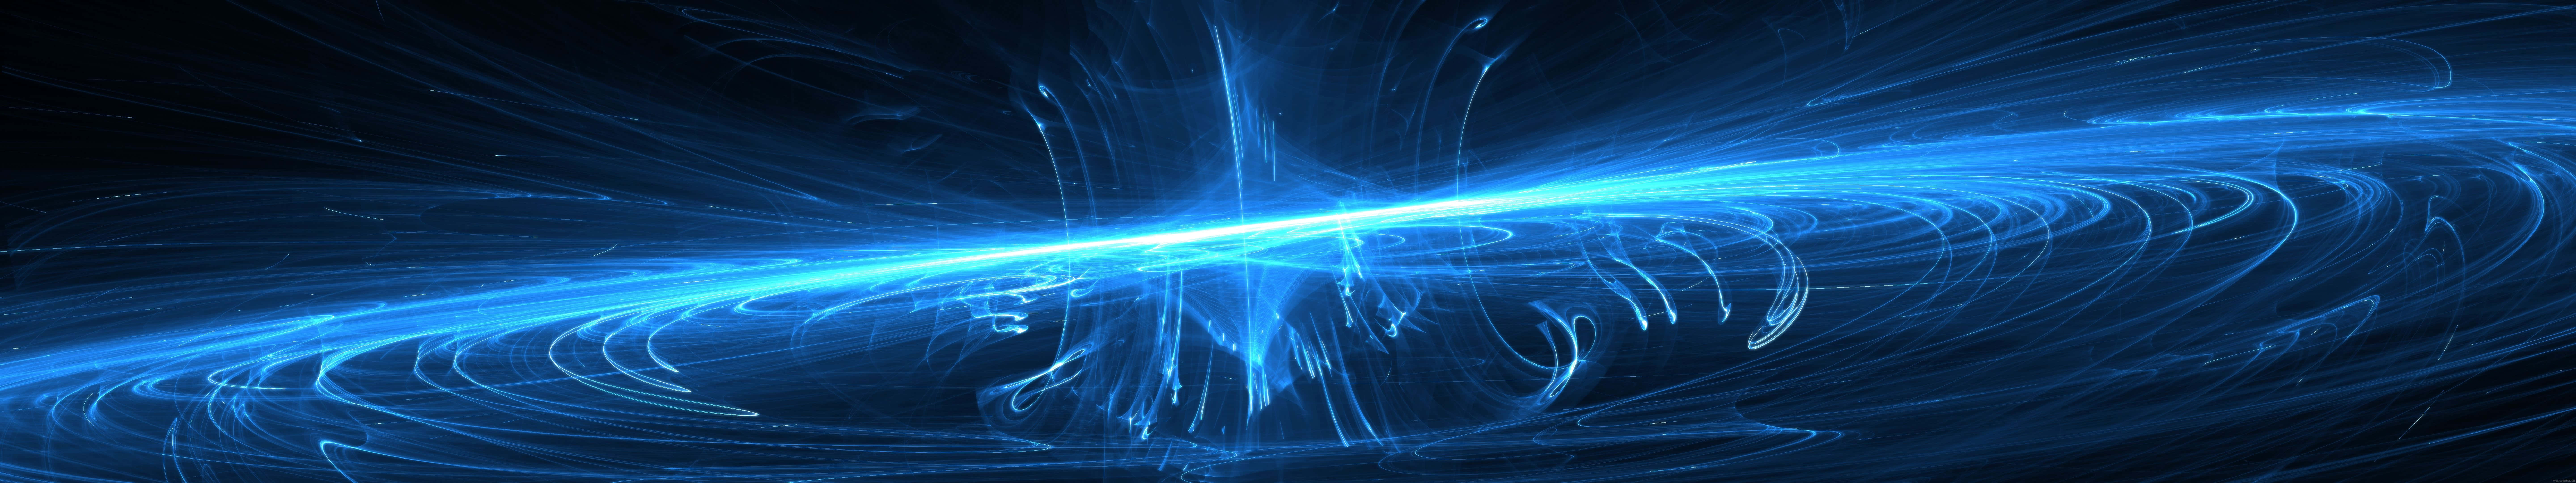 Umfeixe De Luz Azul Com Um Desenho Em Espiral Papel de Parede